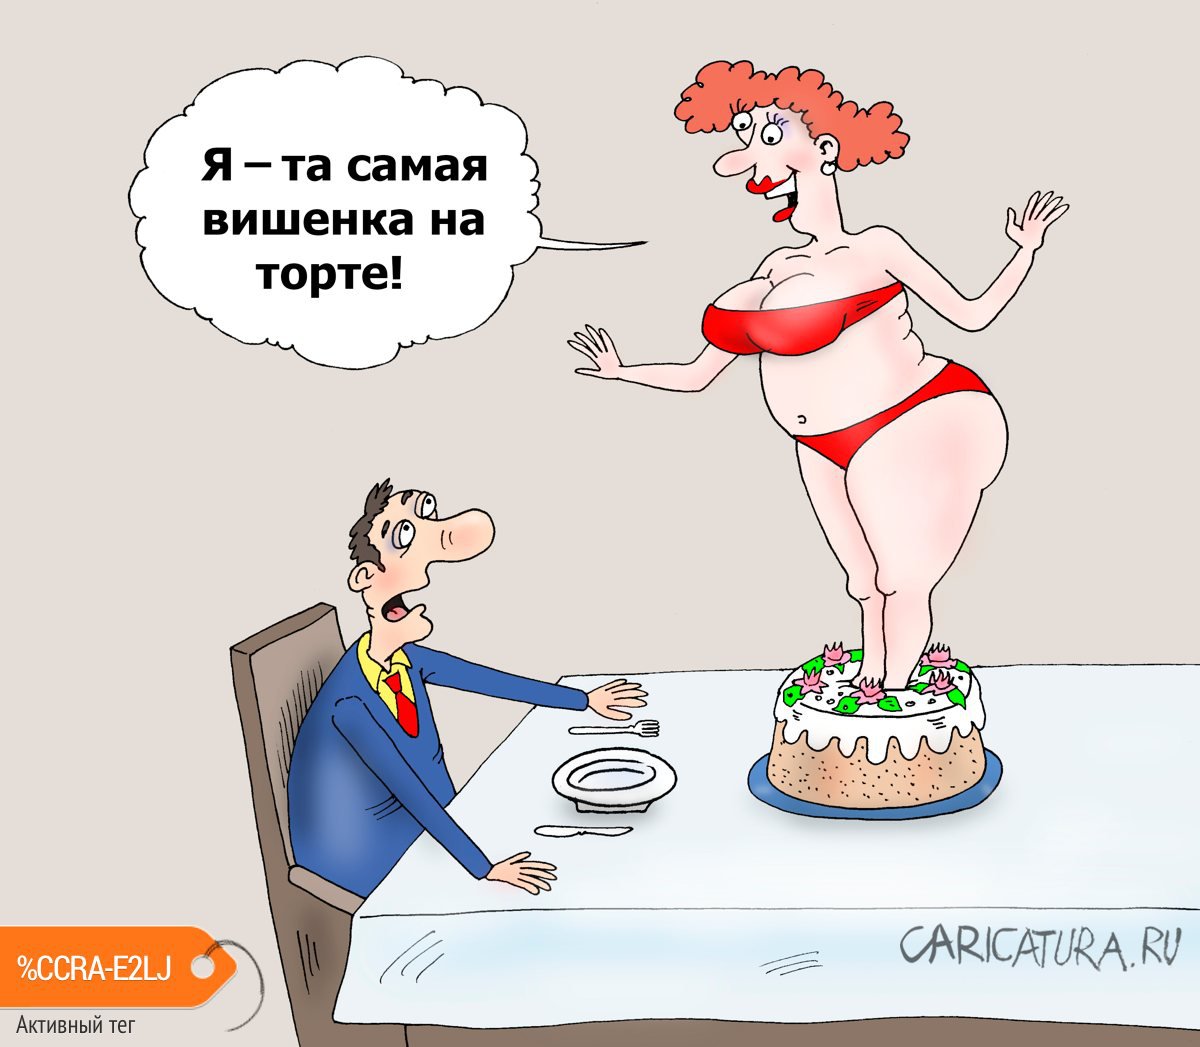 Карикатура "Ягодка", Валерий Тарасенко